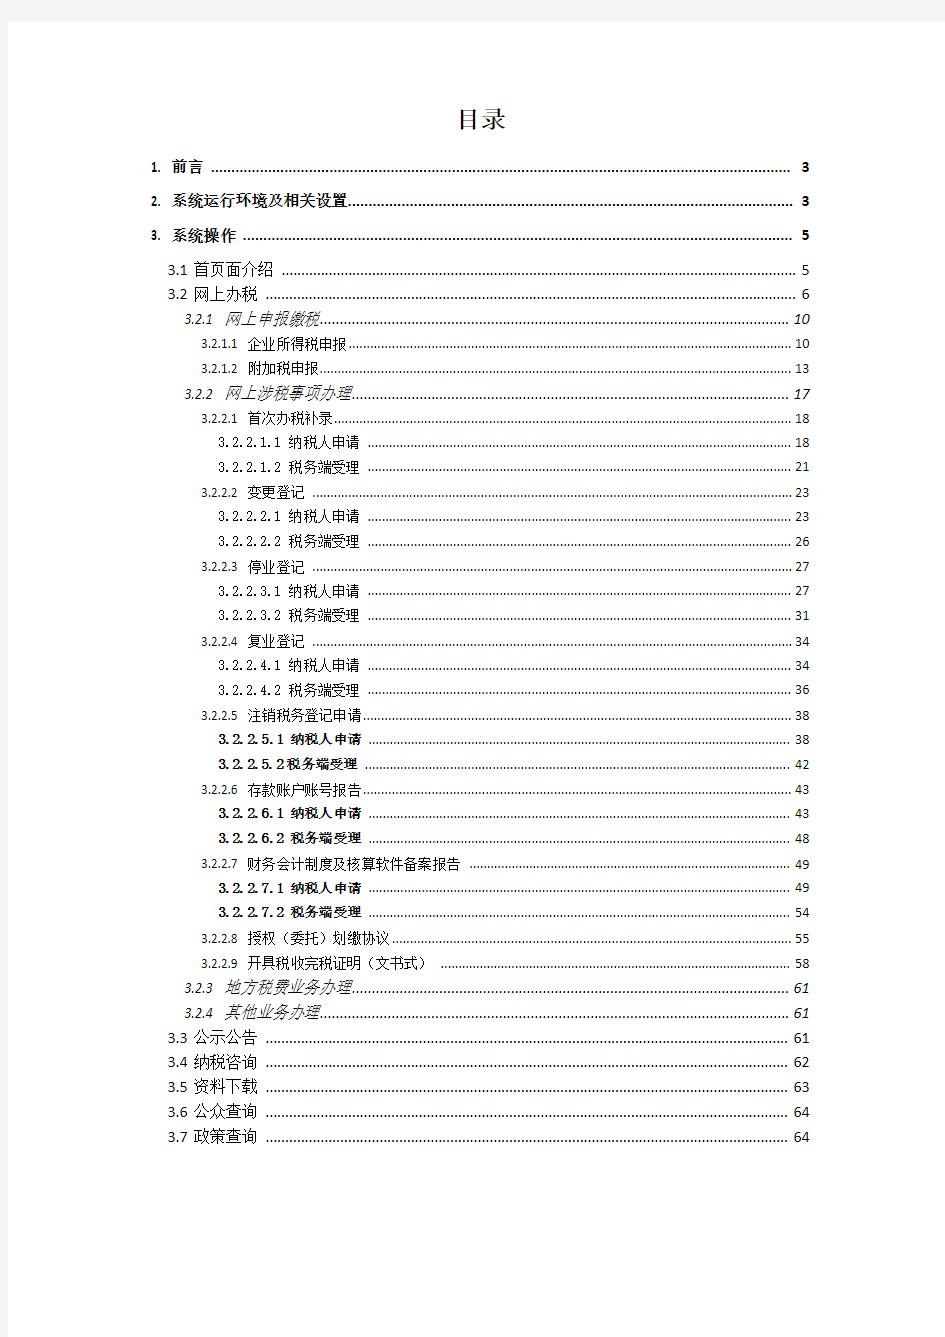 20180616河南省网上税务局操作手册